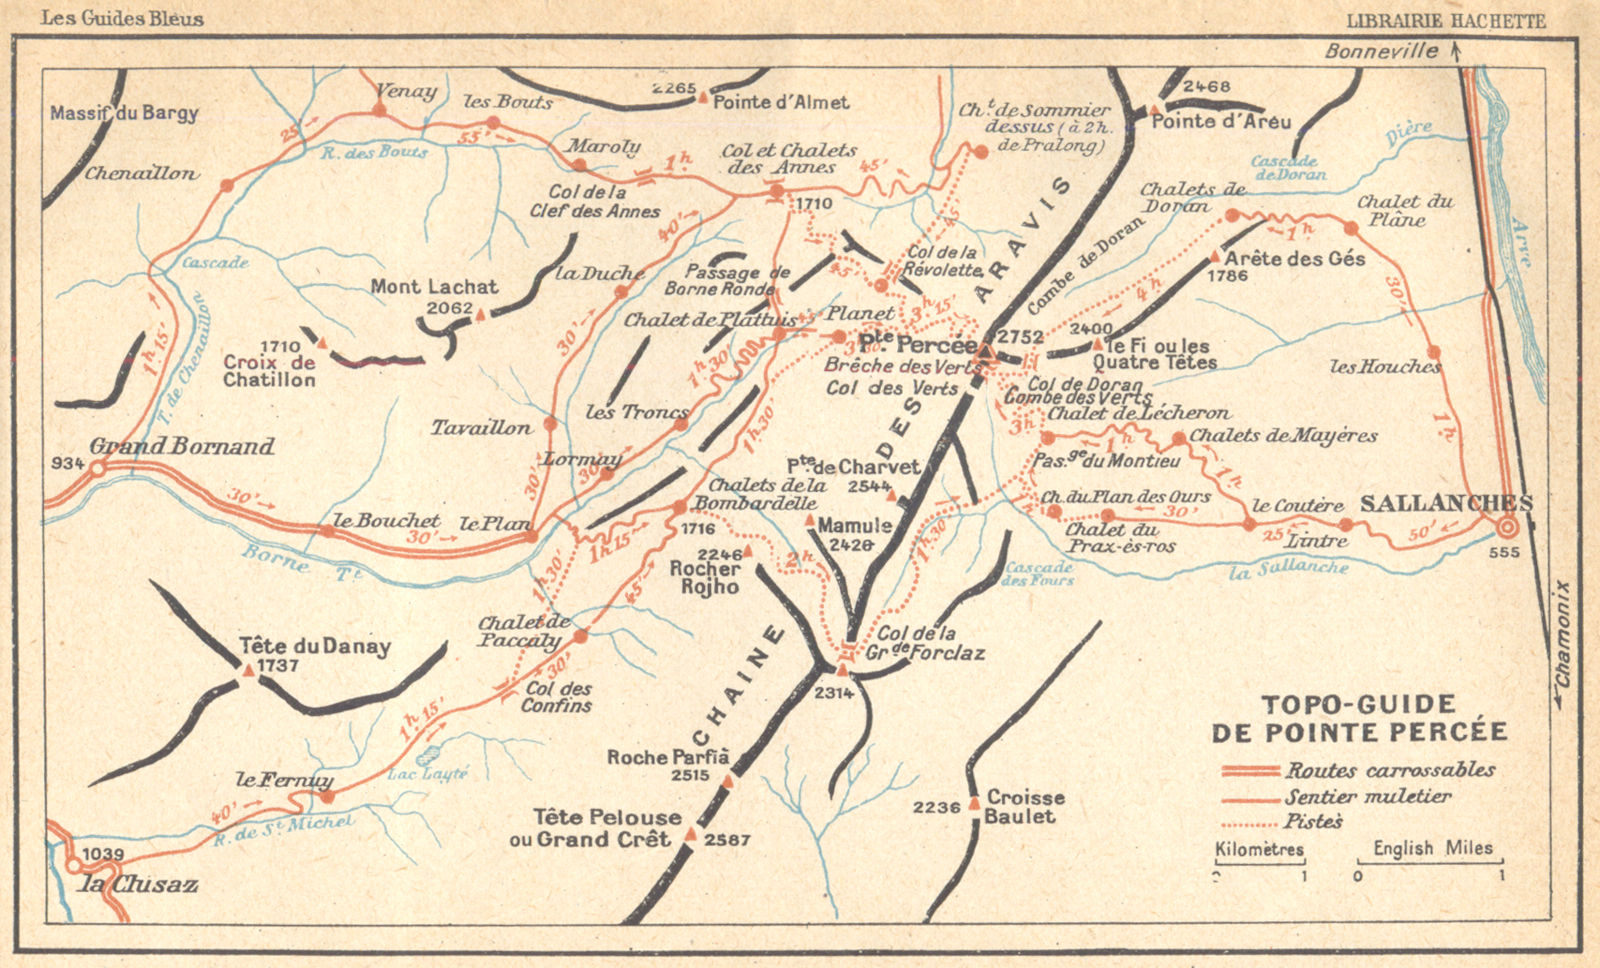 HAUTE- SAVOIE. Topo- guide de Pointe Percée 1925 old vintage map plan chart